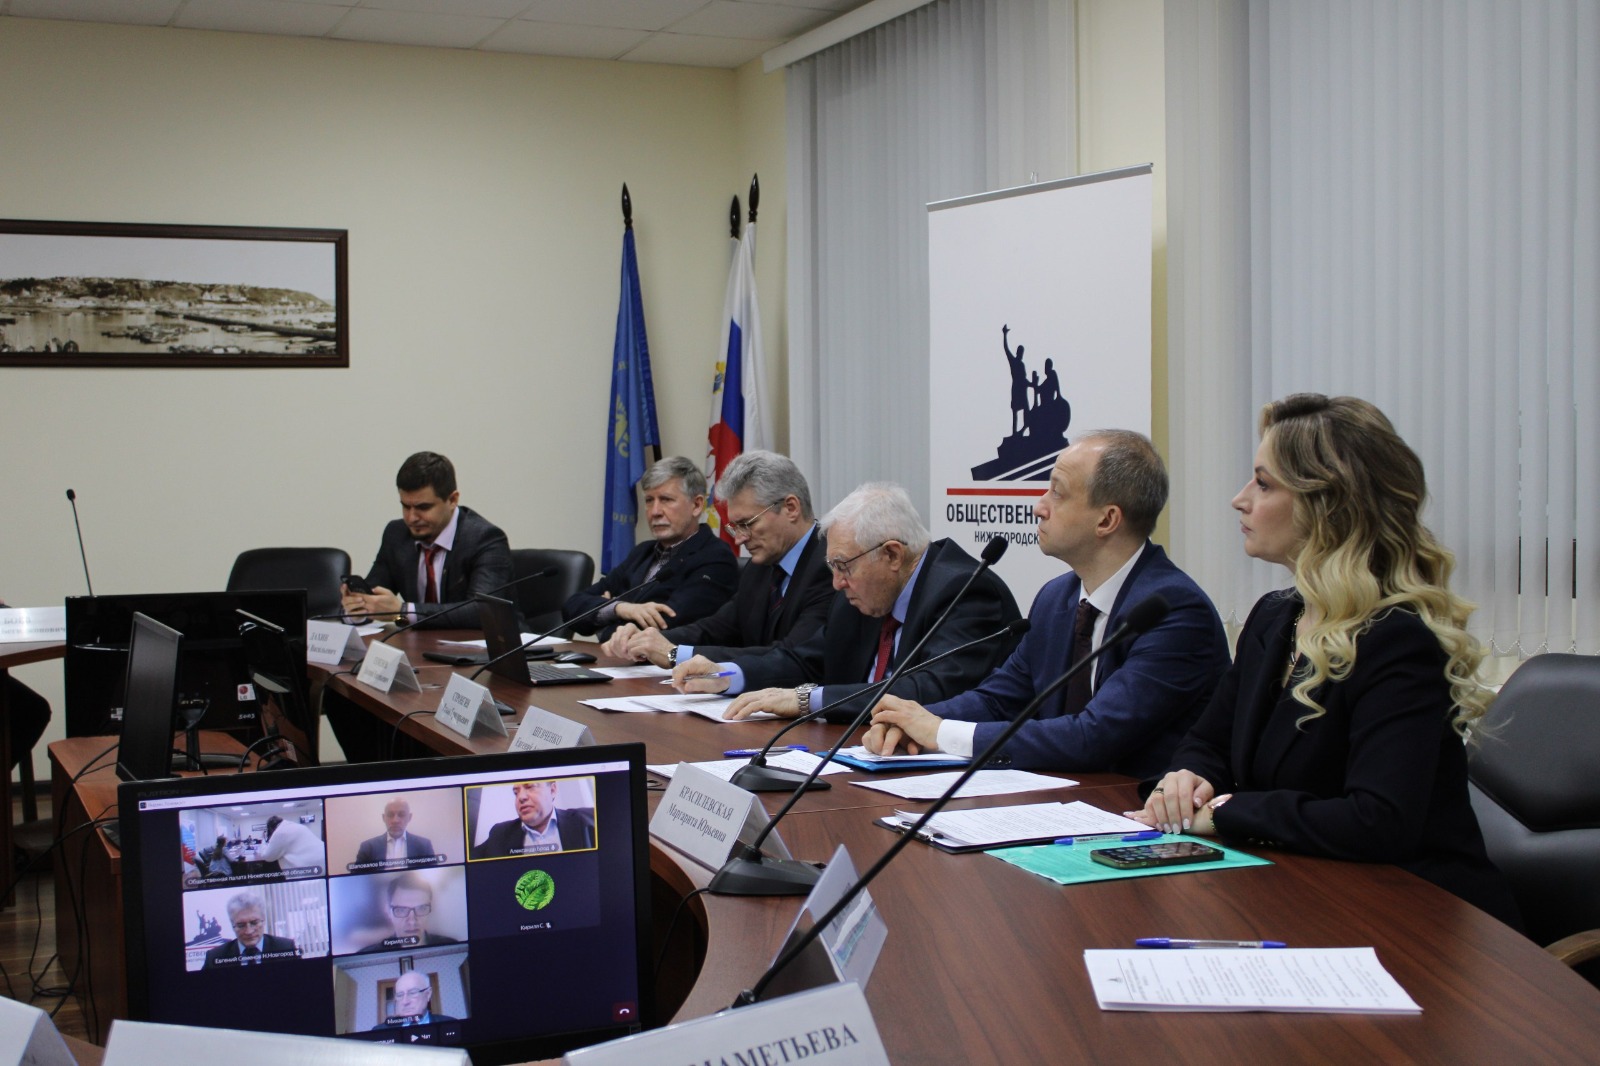 Члены Общественной палаты Нижнего Новгорода приняли участие в работе круглого стола «Взаимодействие участников избирательного процесса»